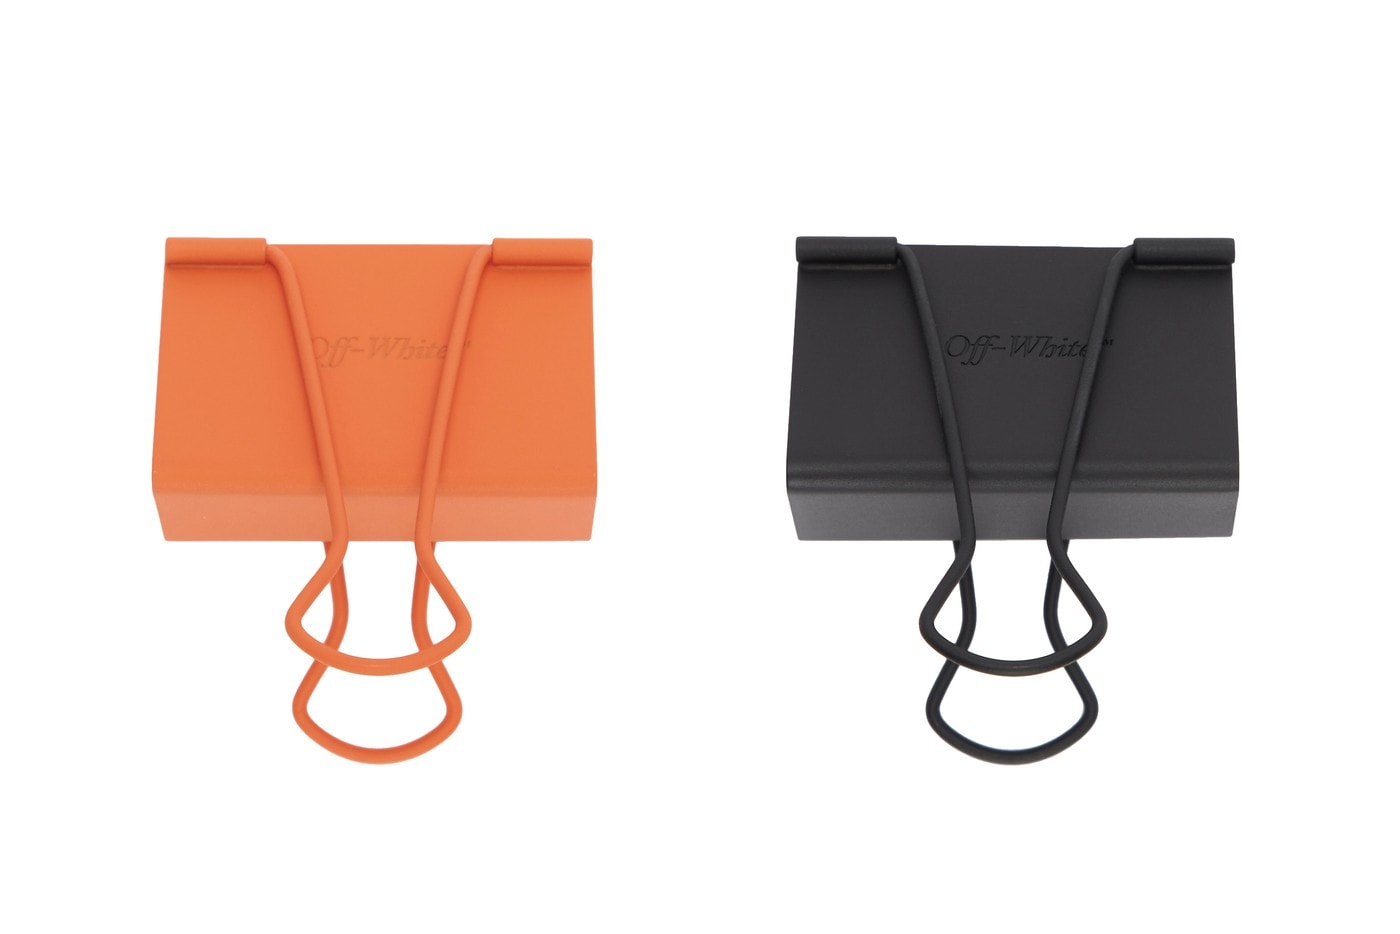 Off-White™ 推出全新黑橙色調長尾夾配件